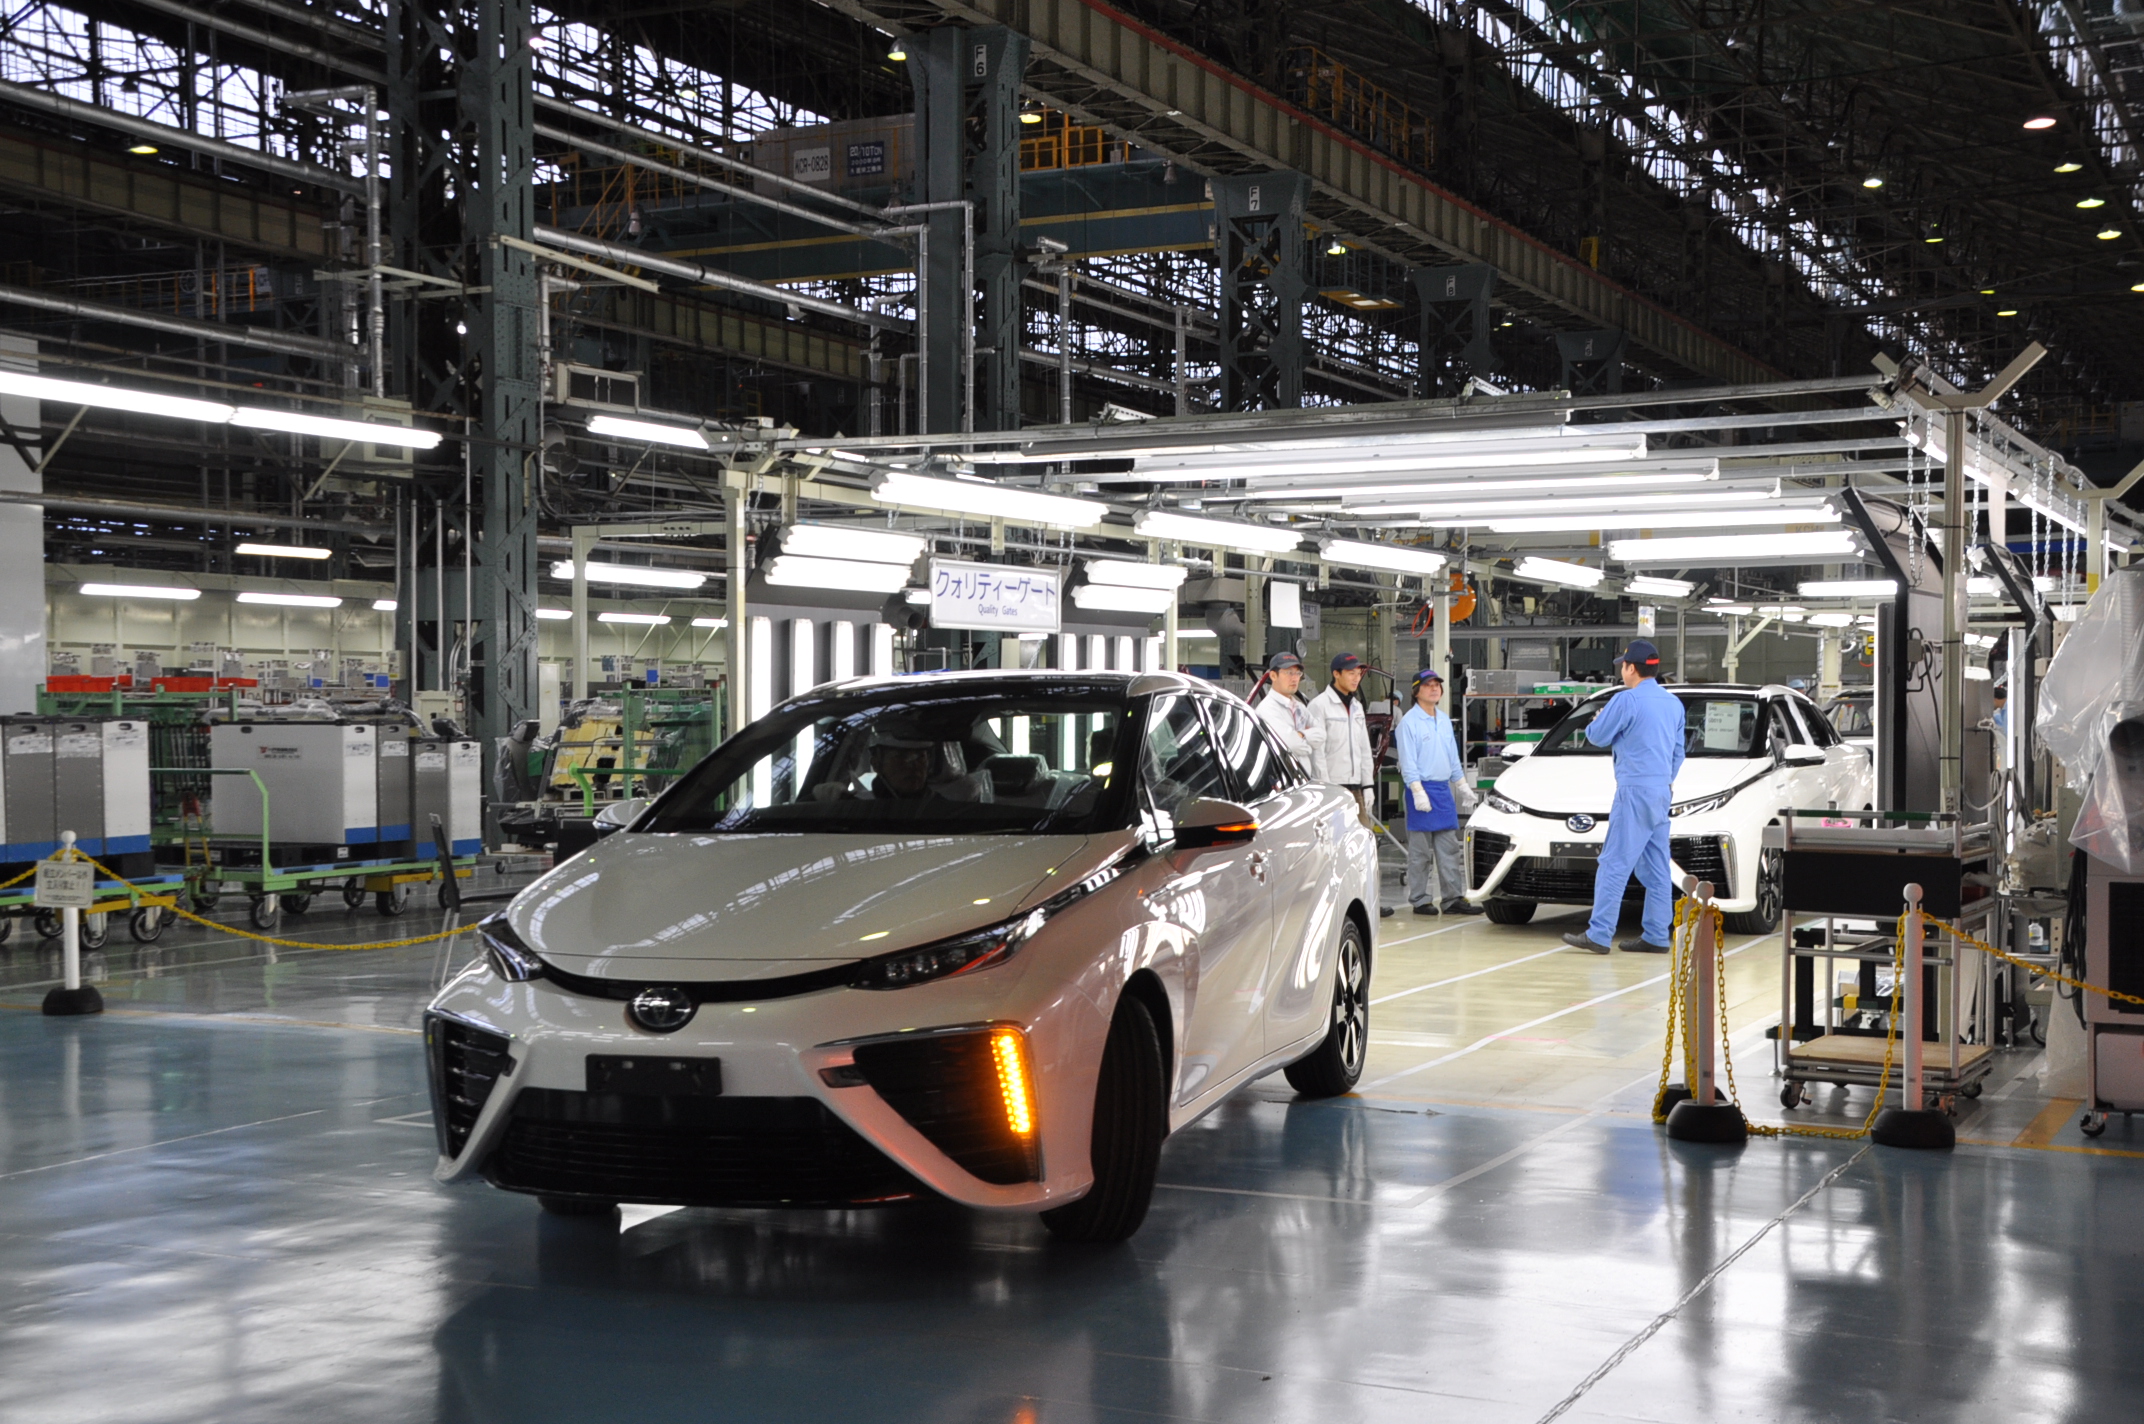 Σταδιακή αναστολή λειτουργίας των εργοστασίων της Toyota στην Ιαπωνία για μία εβδομάδα λόγω των σεισμών